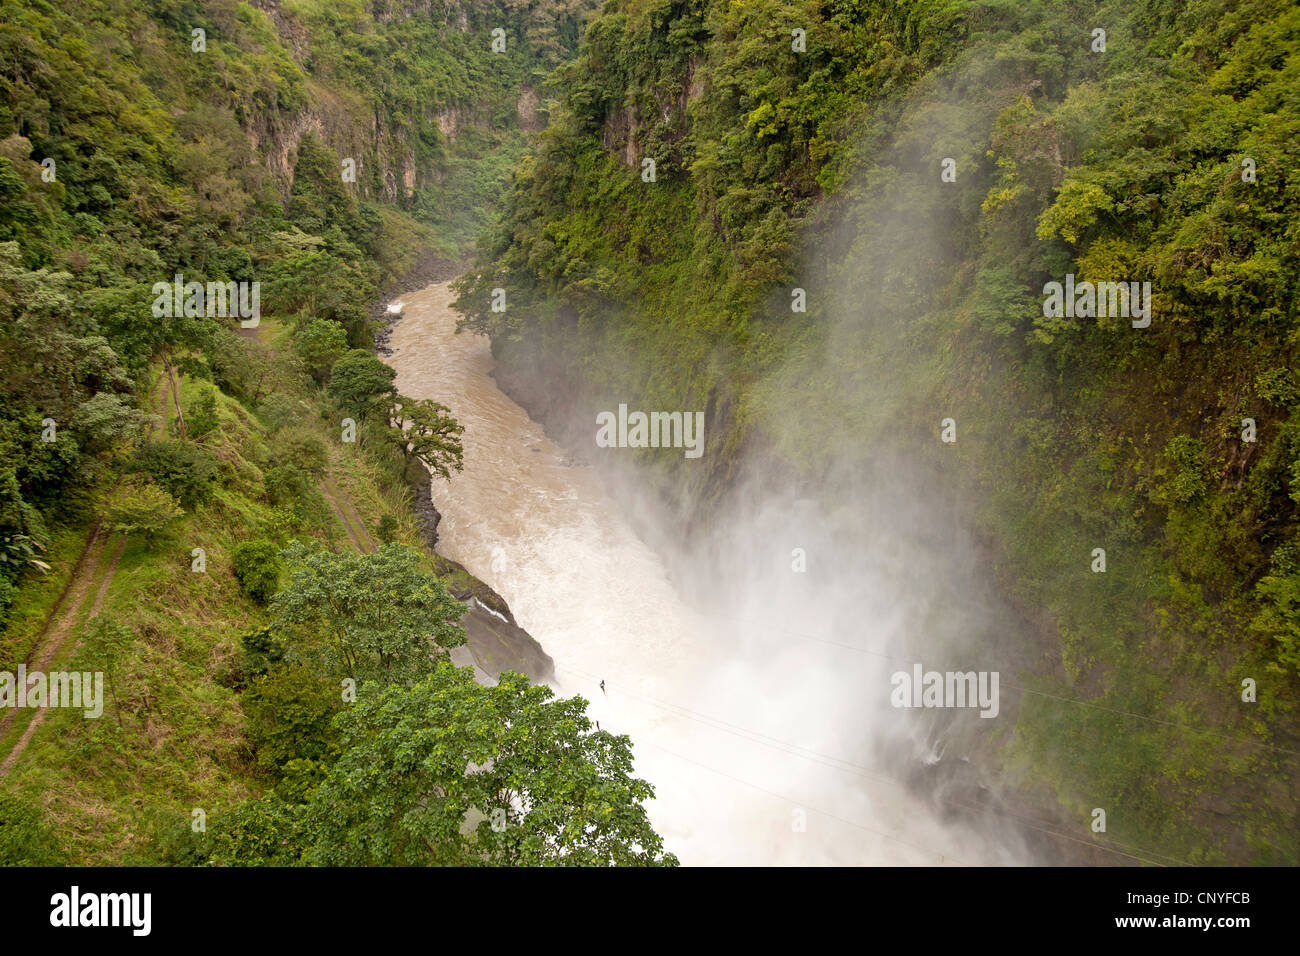 The Orosi River, also called Rio Grande de Orosi, seen from Cachi Reservoir & Dam, Costa Rica, Central America Stock Photo